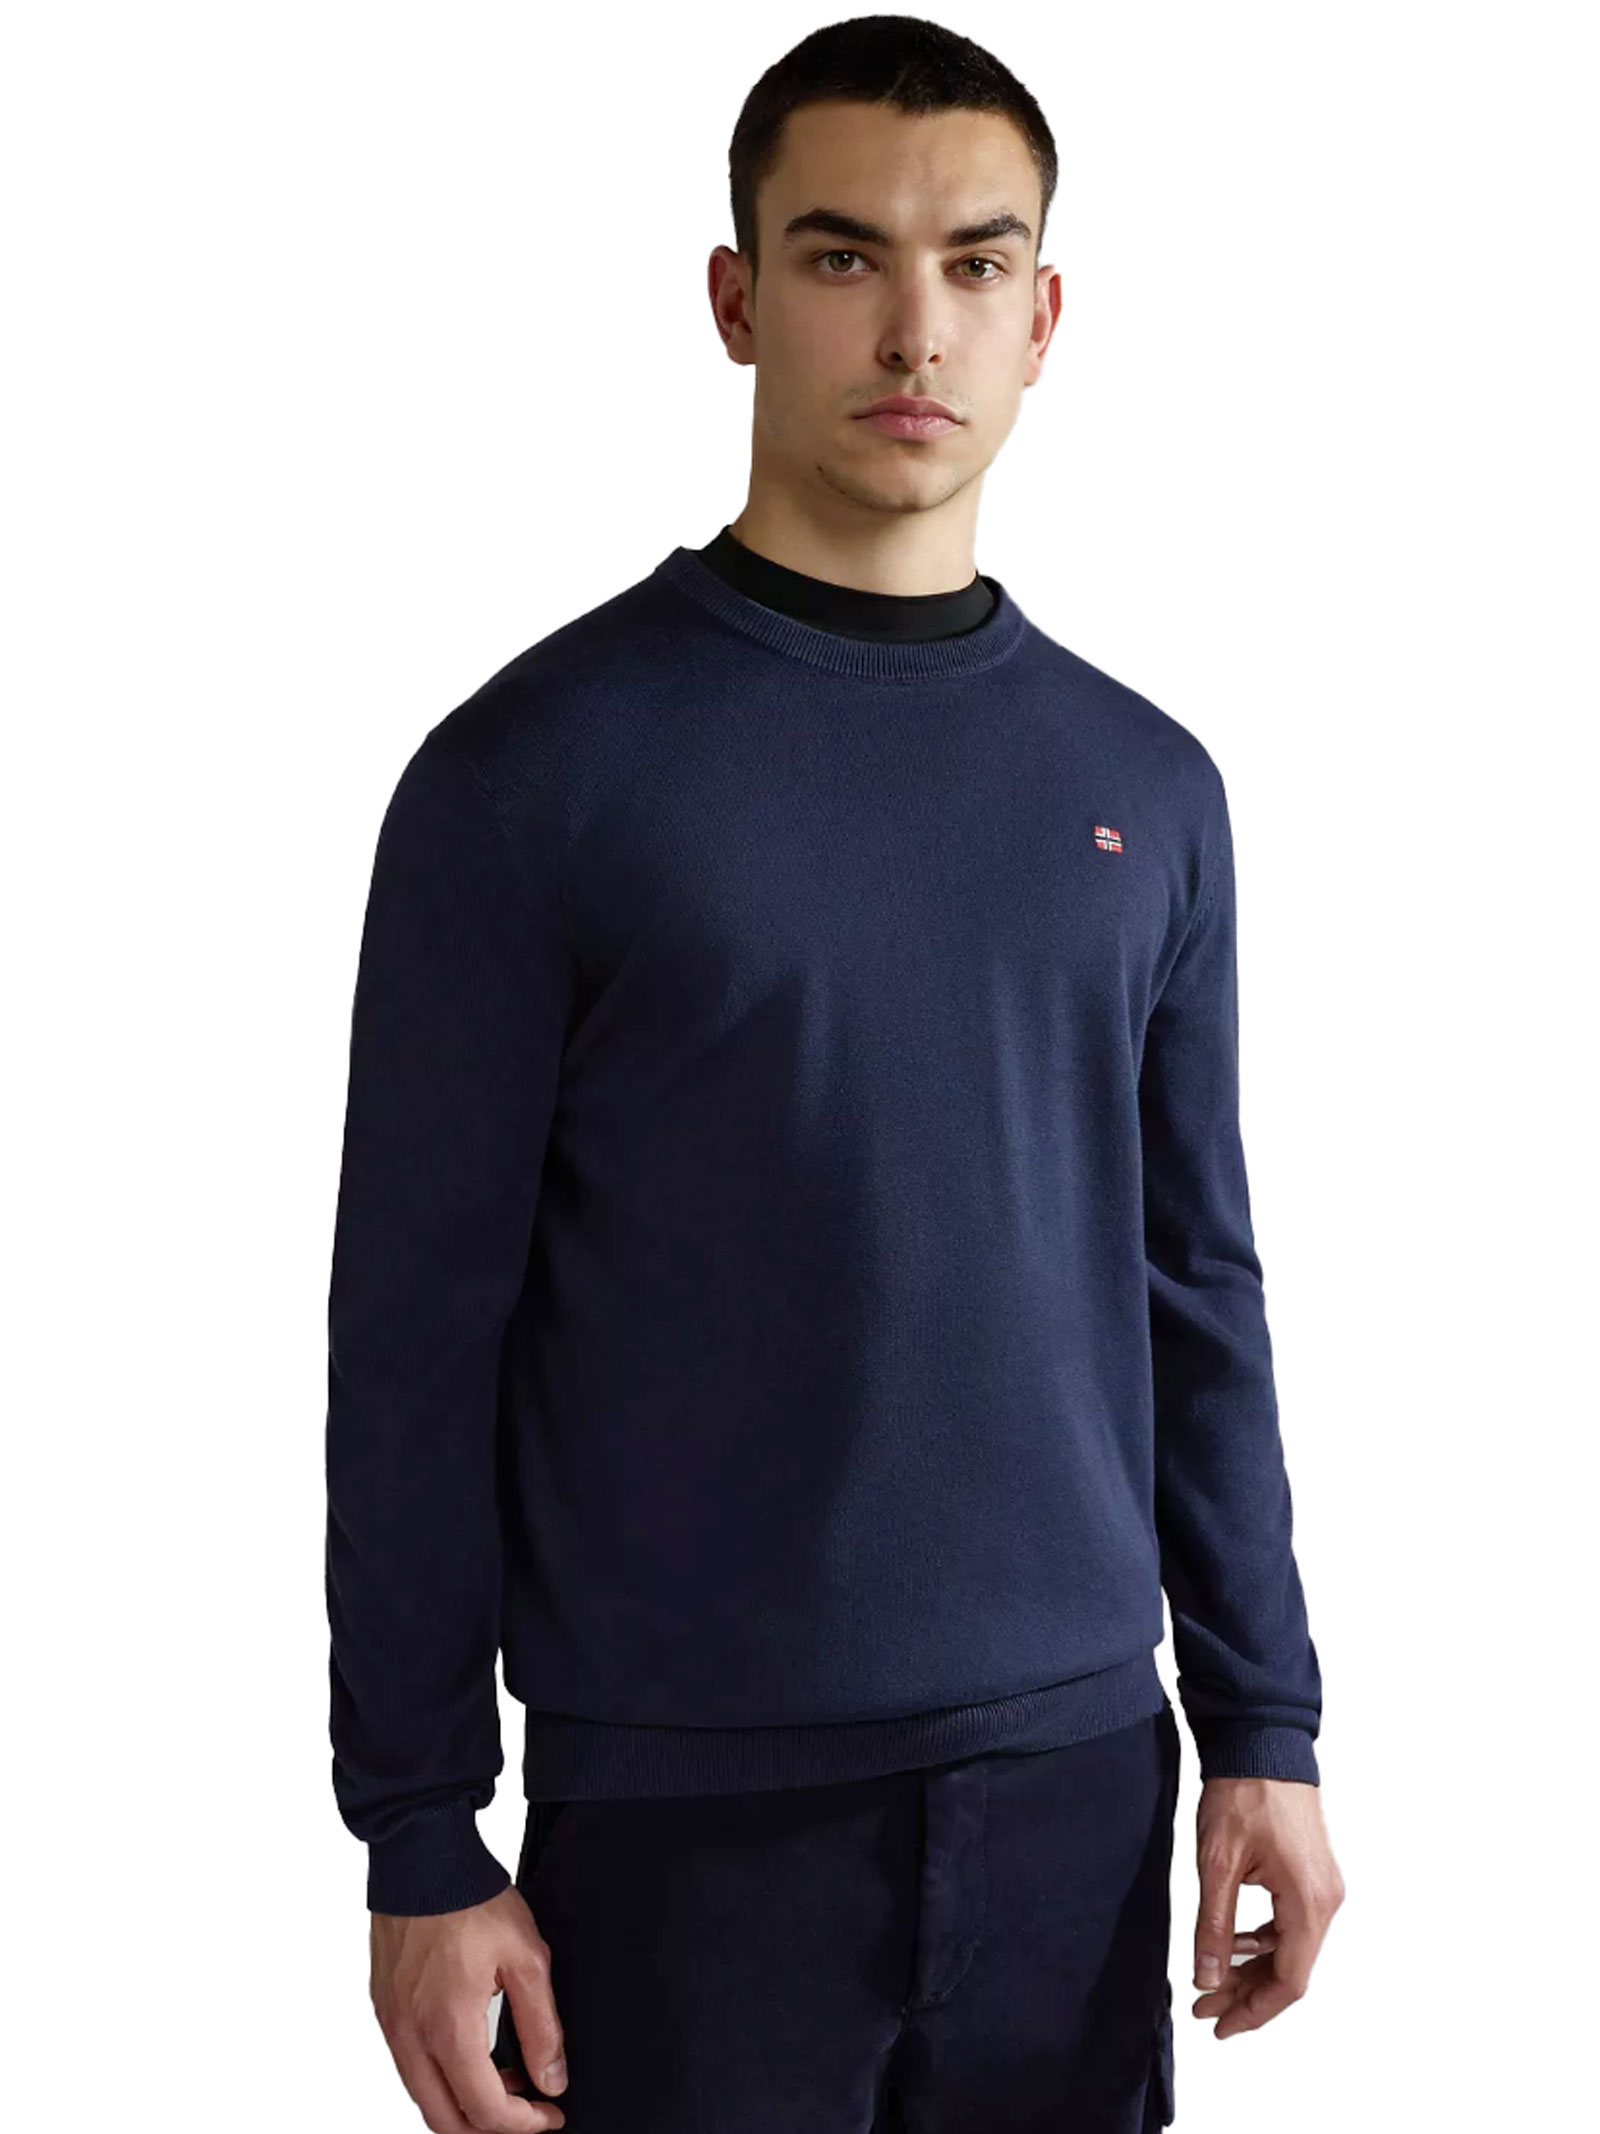 цена Napapijri Droz свитер с круглым вырезом, синий